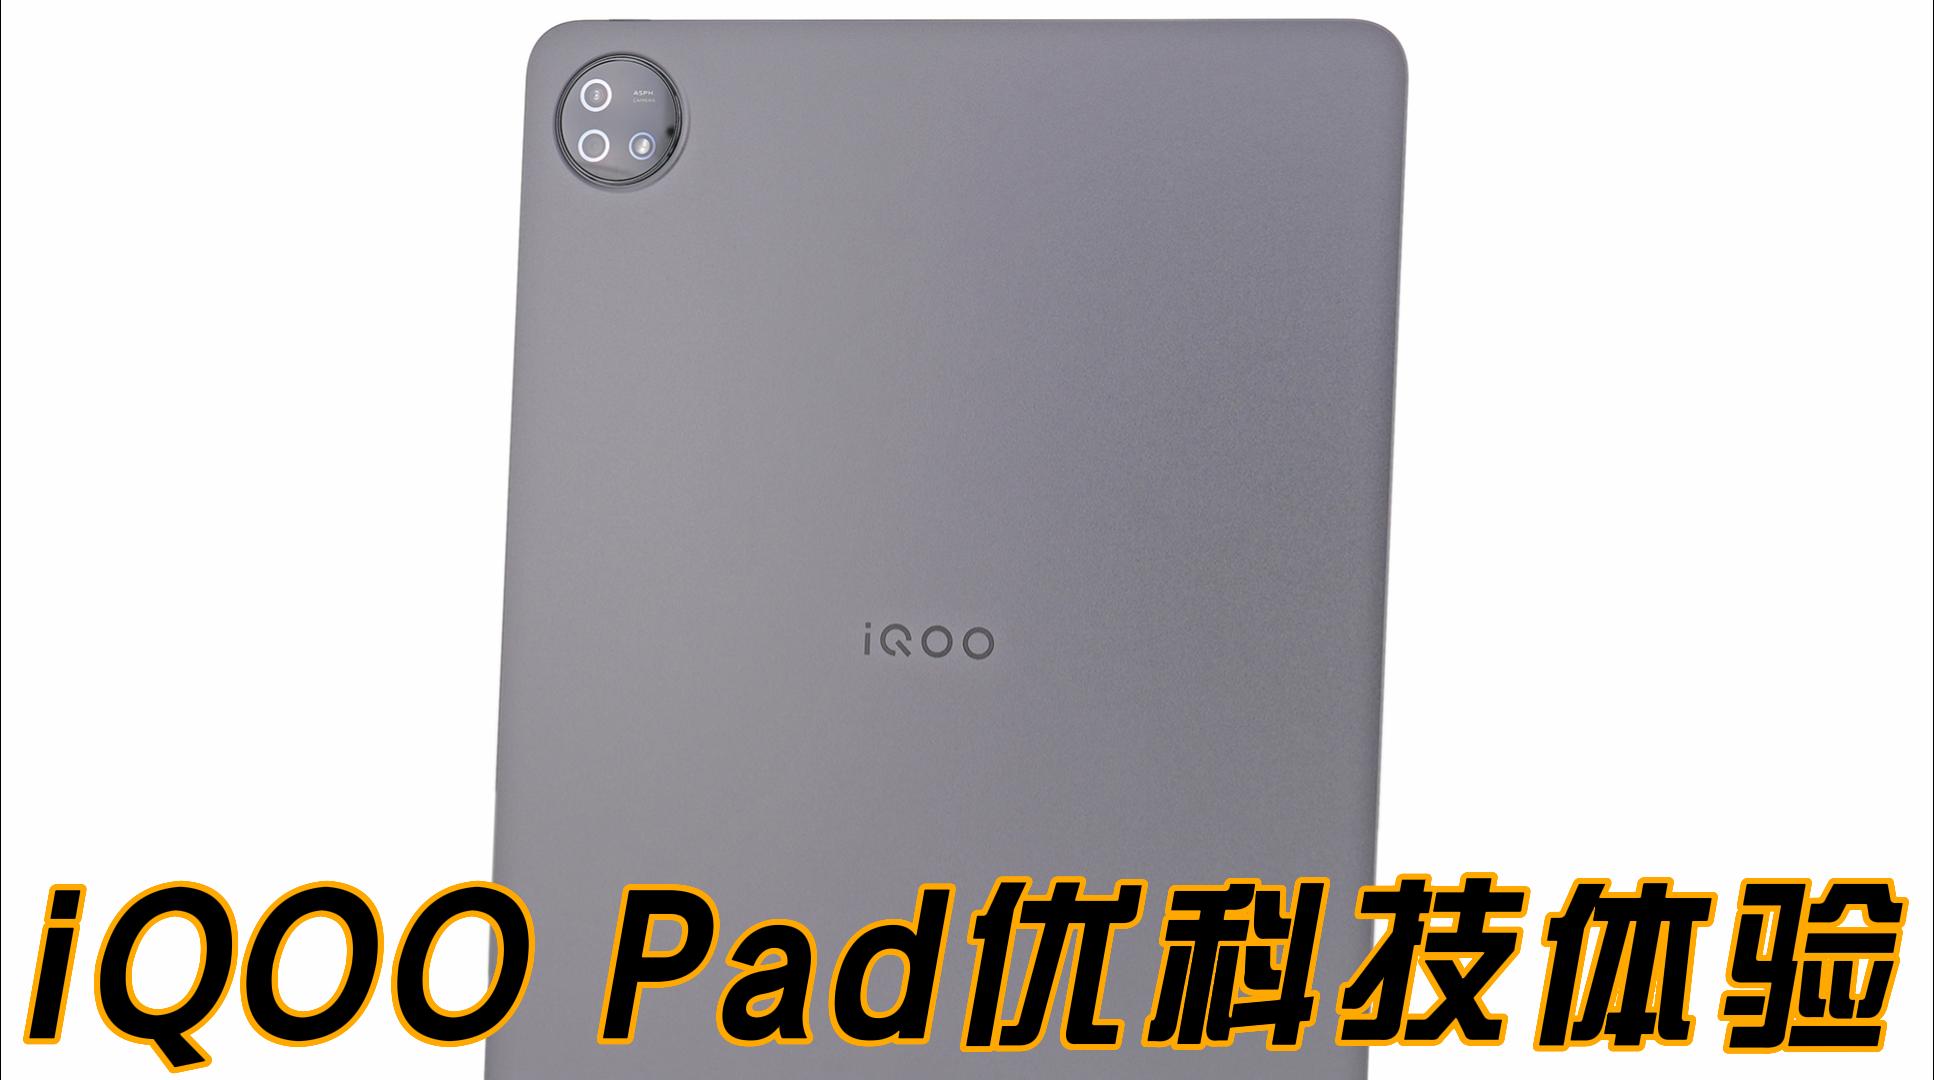 更大更强更好用 iQOO Pad优科技全面体验